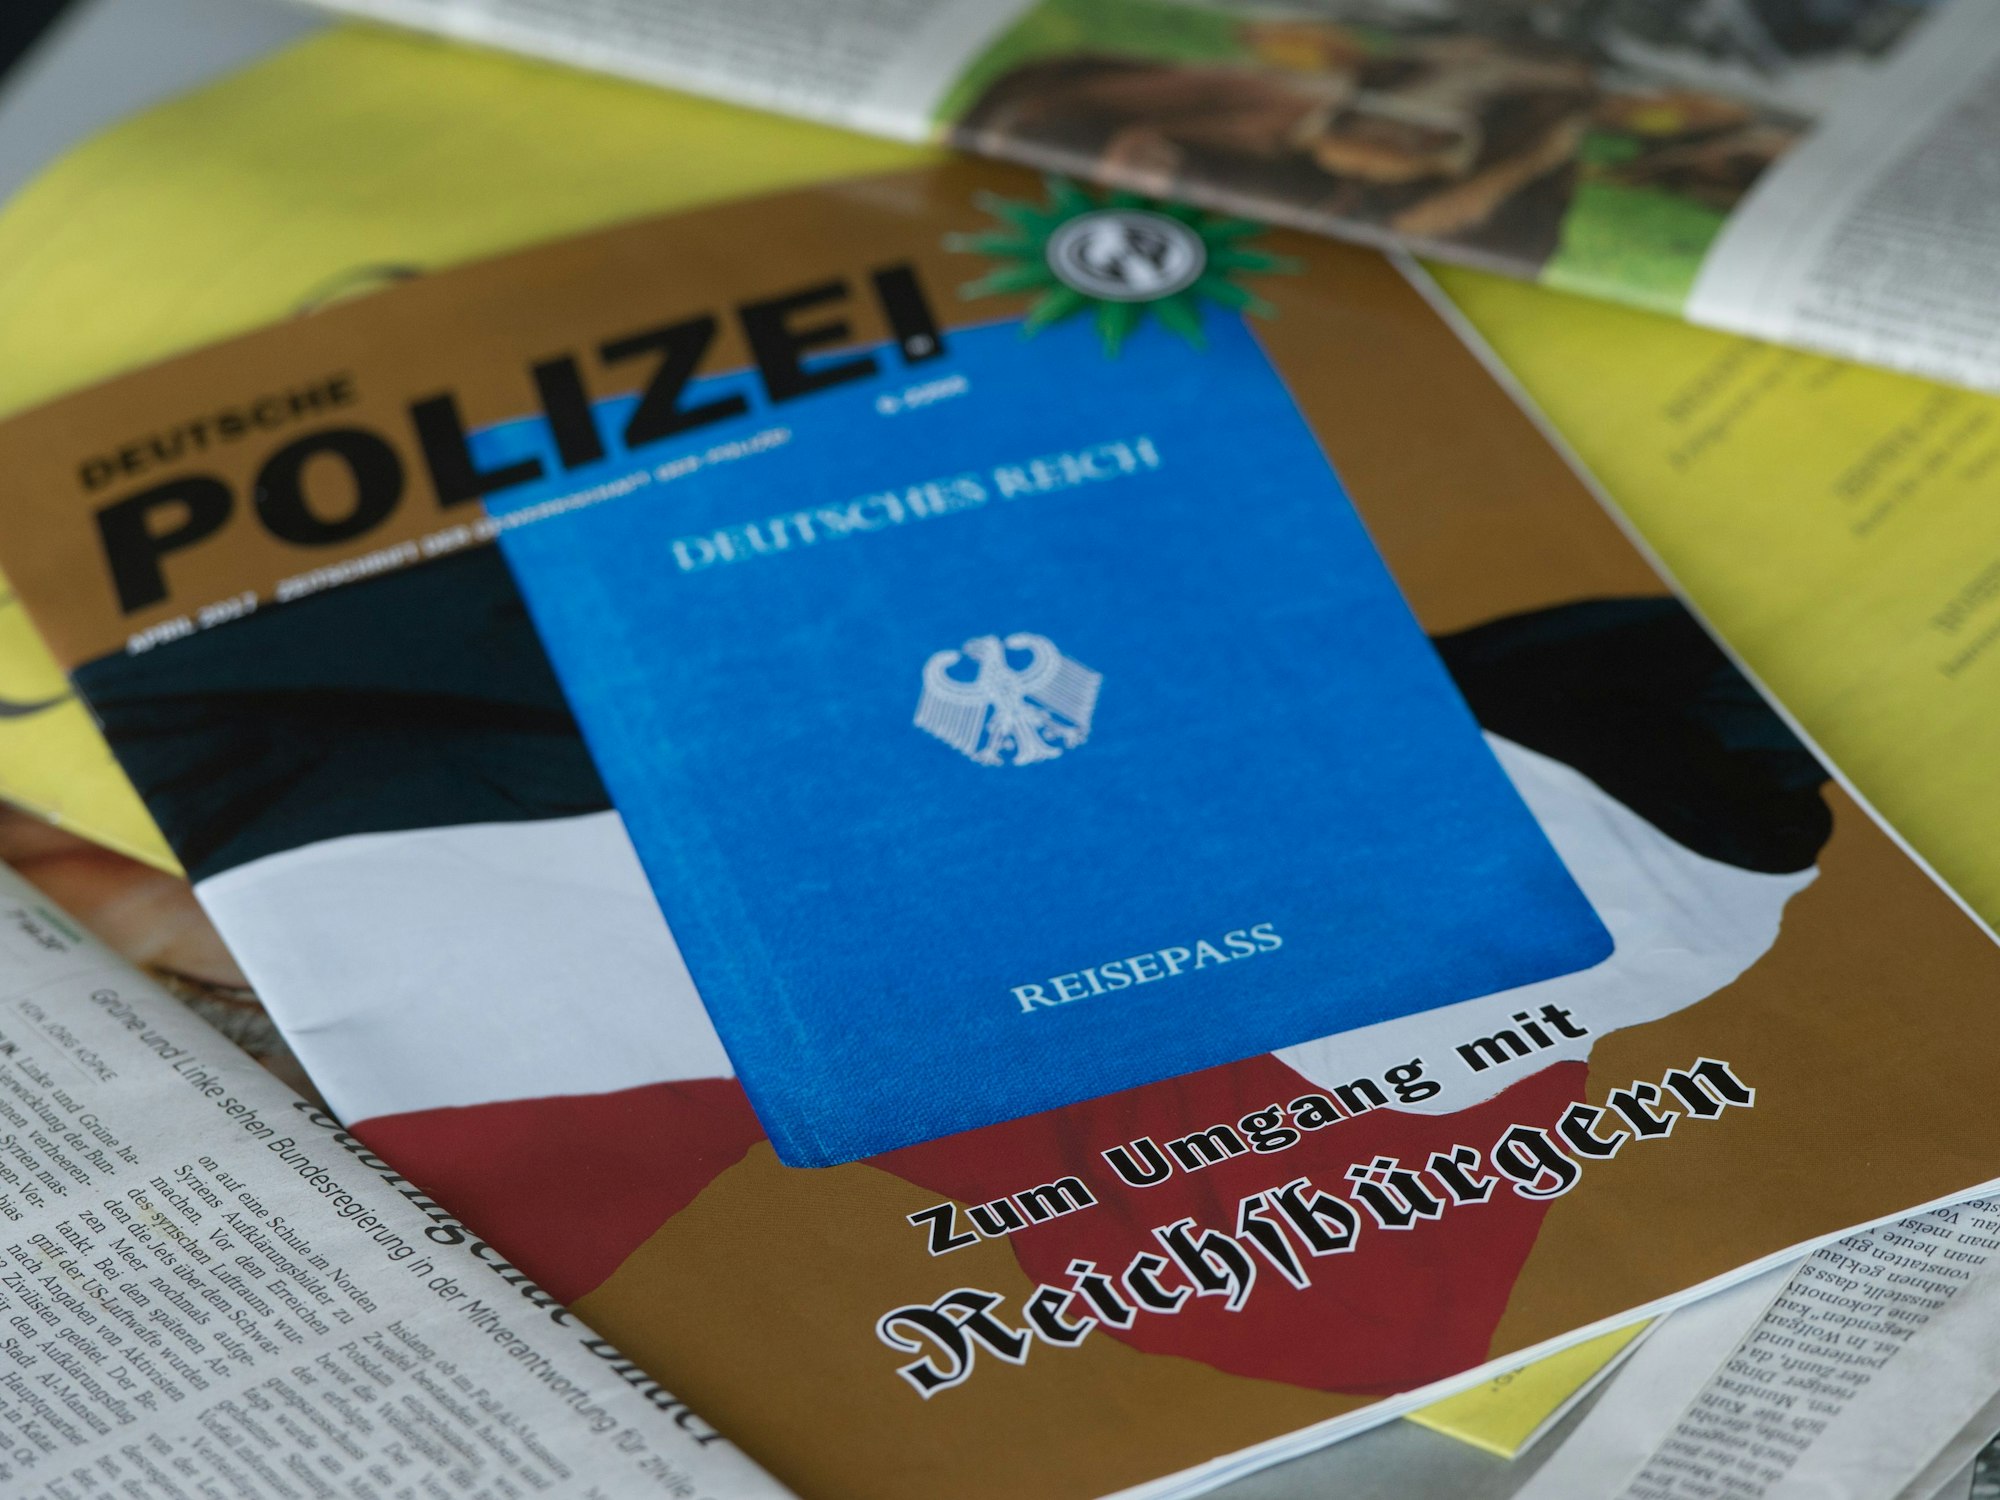 Eine Ausgabe der Zeitschrift Deutsche Polizei über Reichsbürger, die von der Gewerkschaft der Polizei herausgegeben wird, liegt auf einem Tisch.